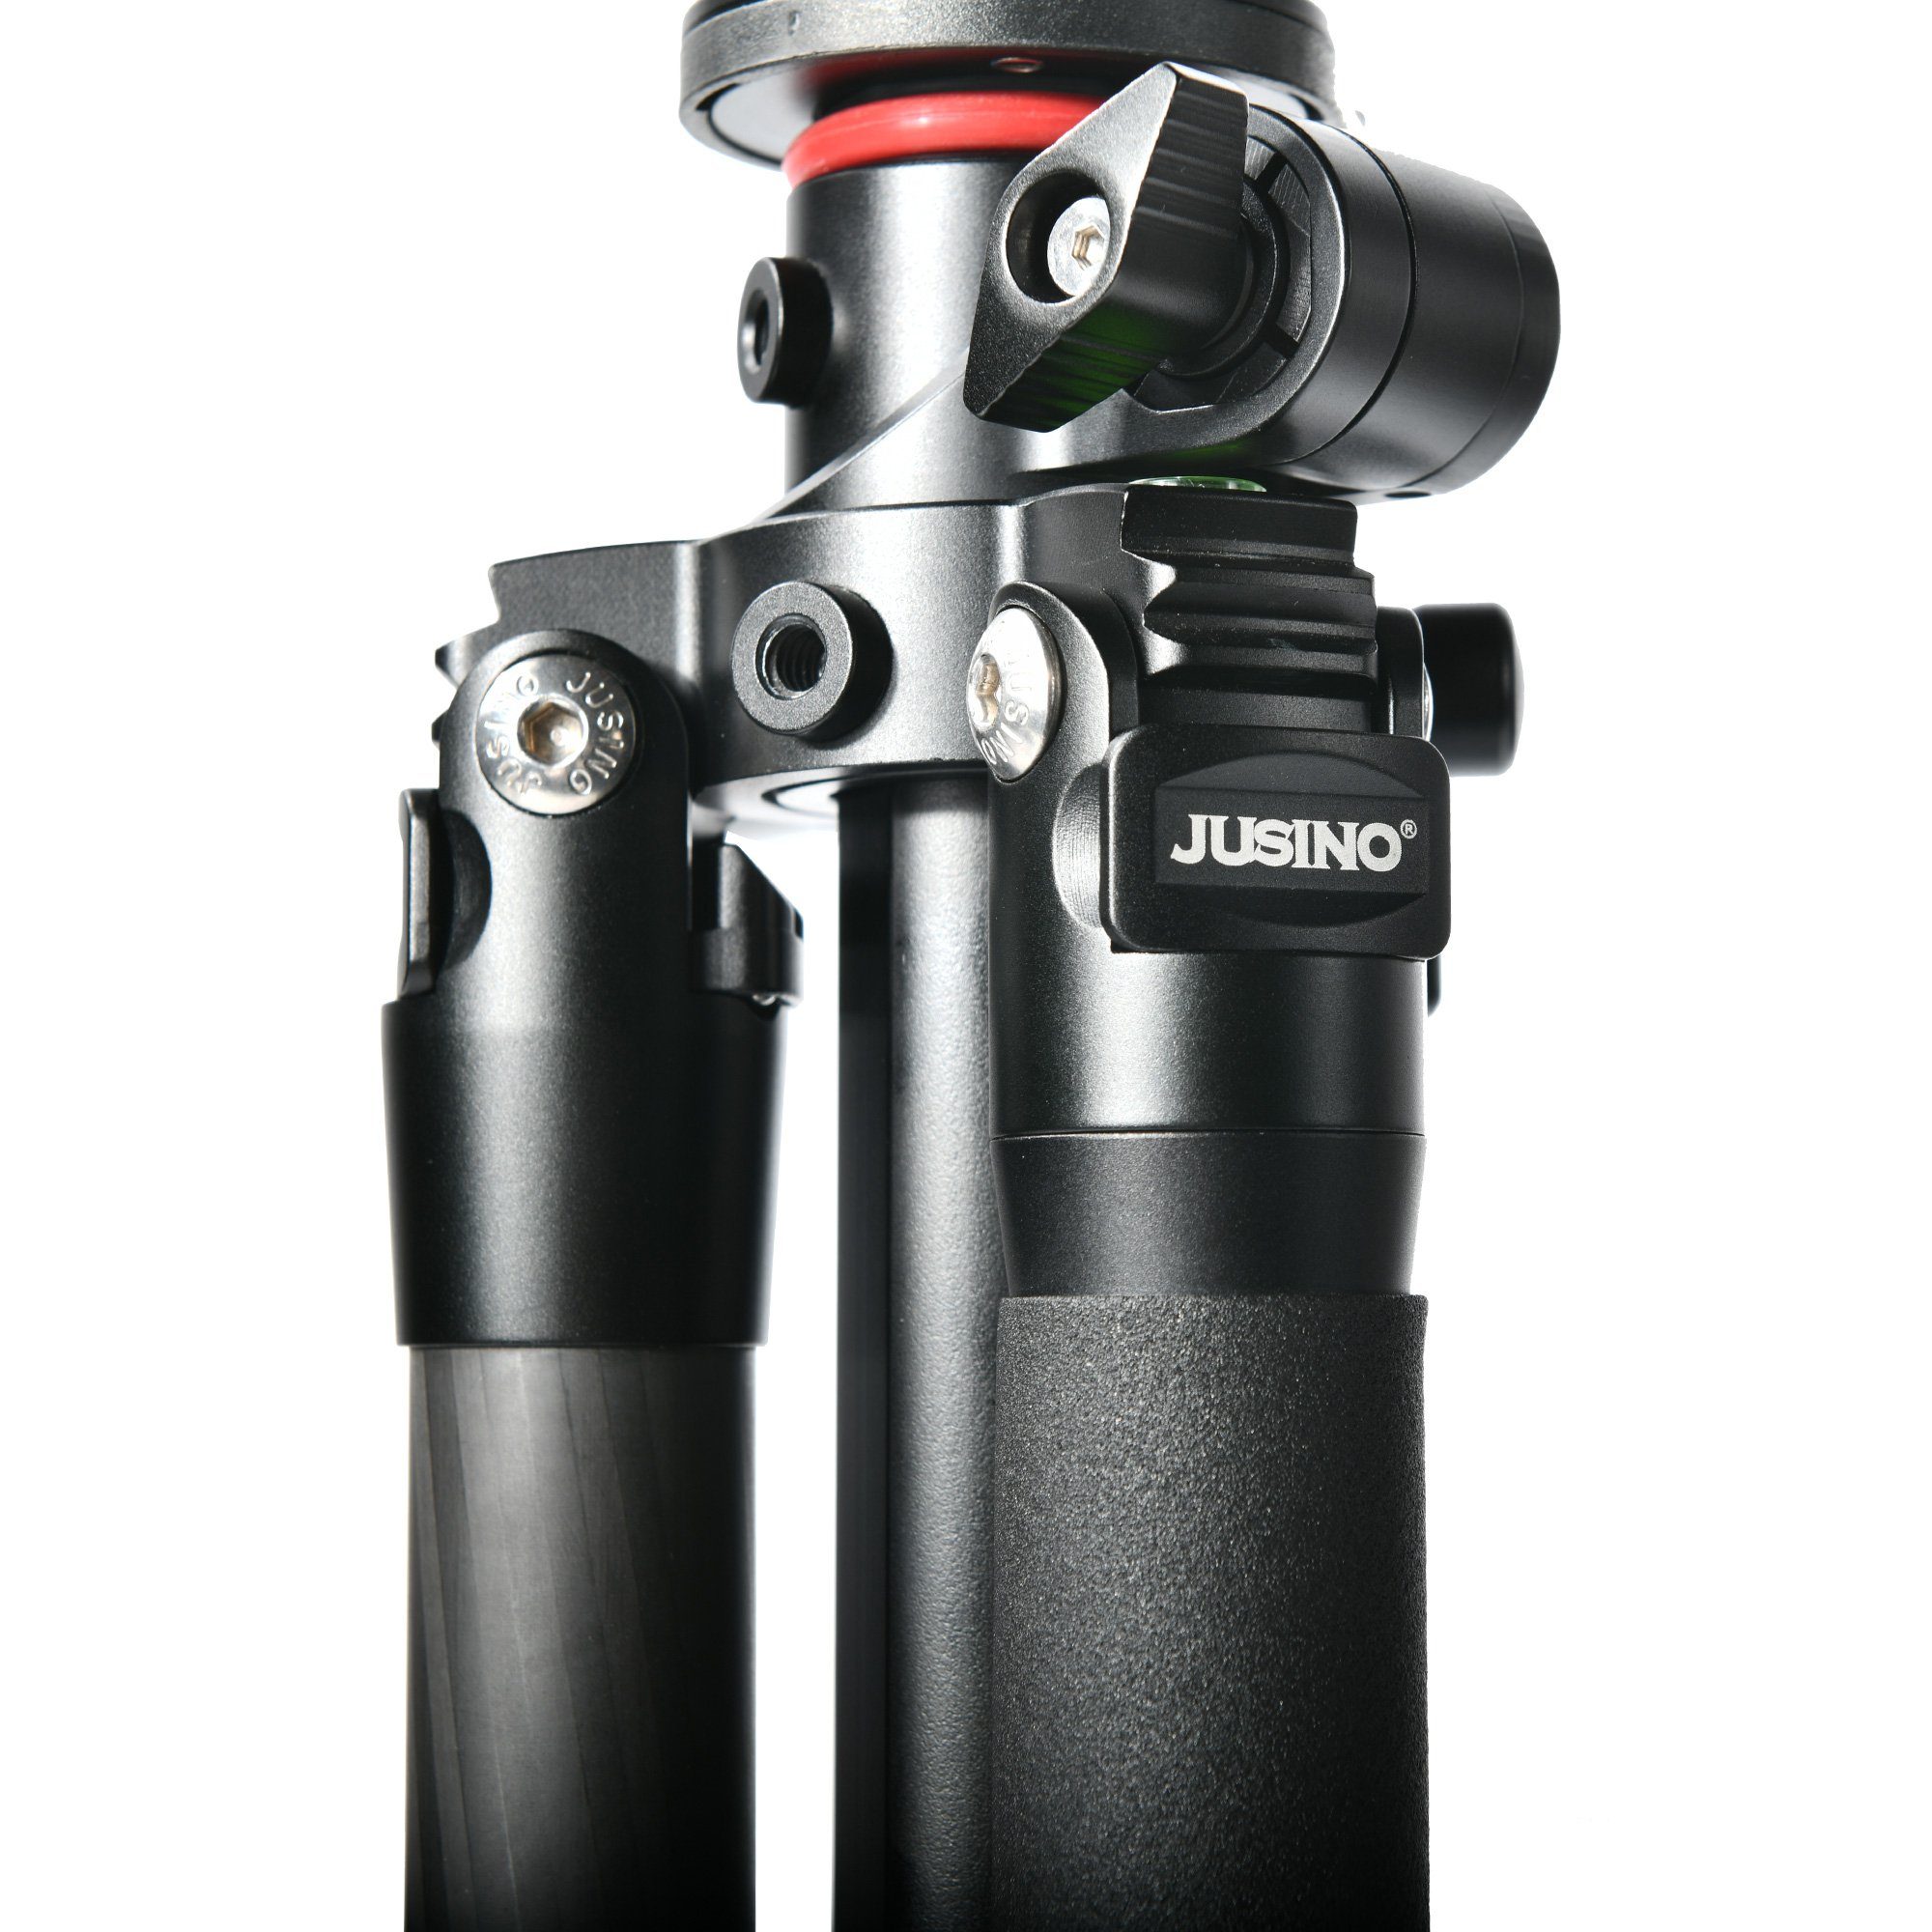 JUSINO GA-284C leichtes Karbon-Stativ flexible Höhe 170cm Max Dreibeinstativ Mittelsäule